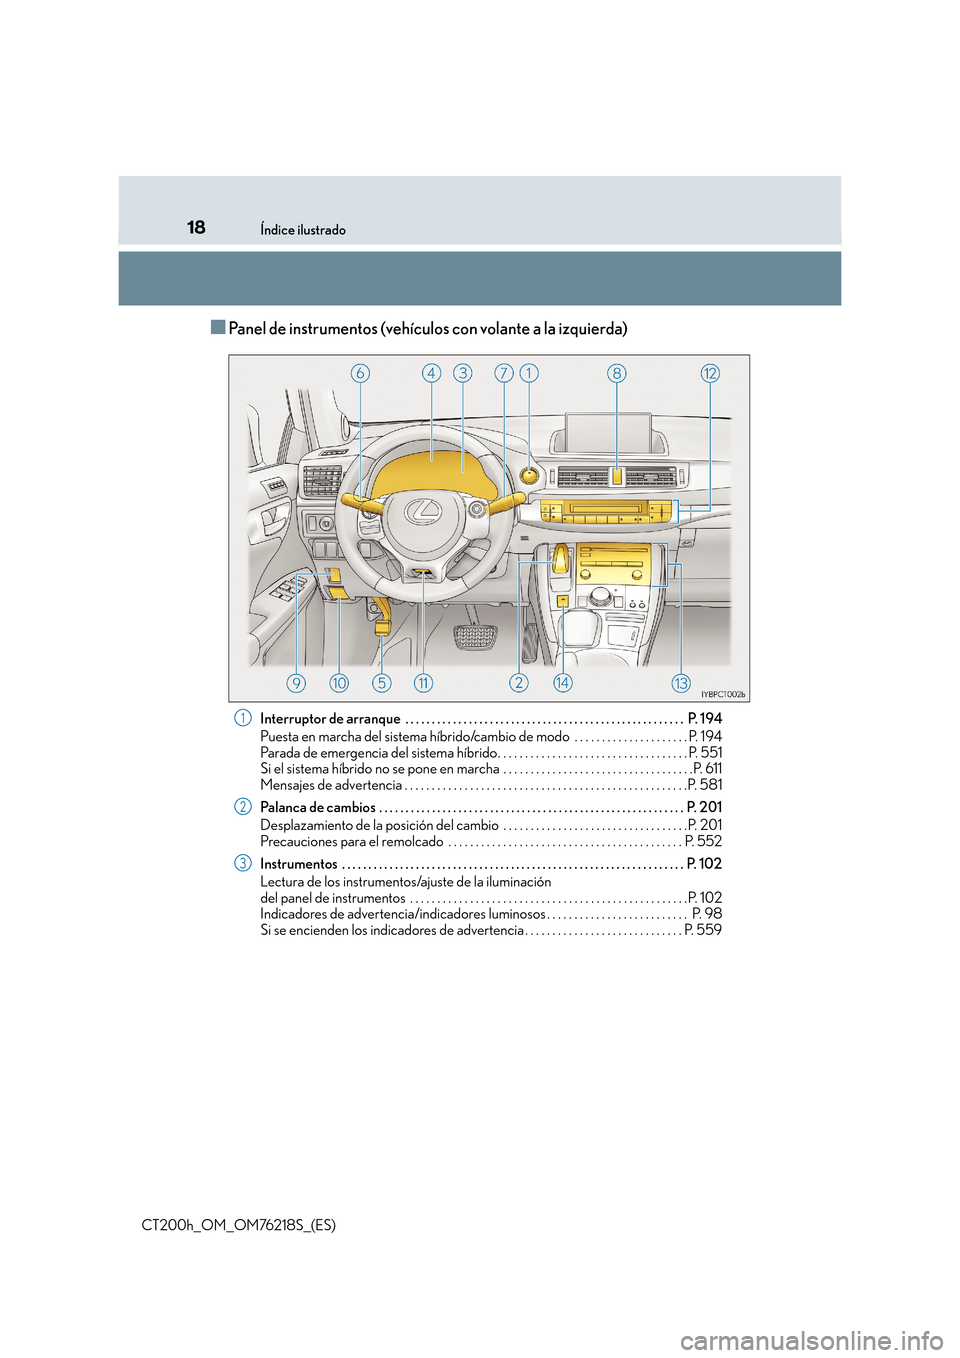 Lexus CT200h 2017  Manual del propietario (in Spanish) 18Índice ilustrado
CT200h_OM_OM76218S_(ES)
■Panel de instrumentos (vehículos con volante a la izquierda)
Interruptor de arranque  . . . . . . . . . . . . . . . . . . . . . . . . . . . . . . . . . 